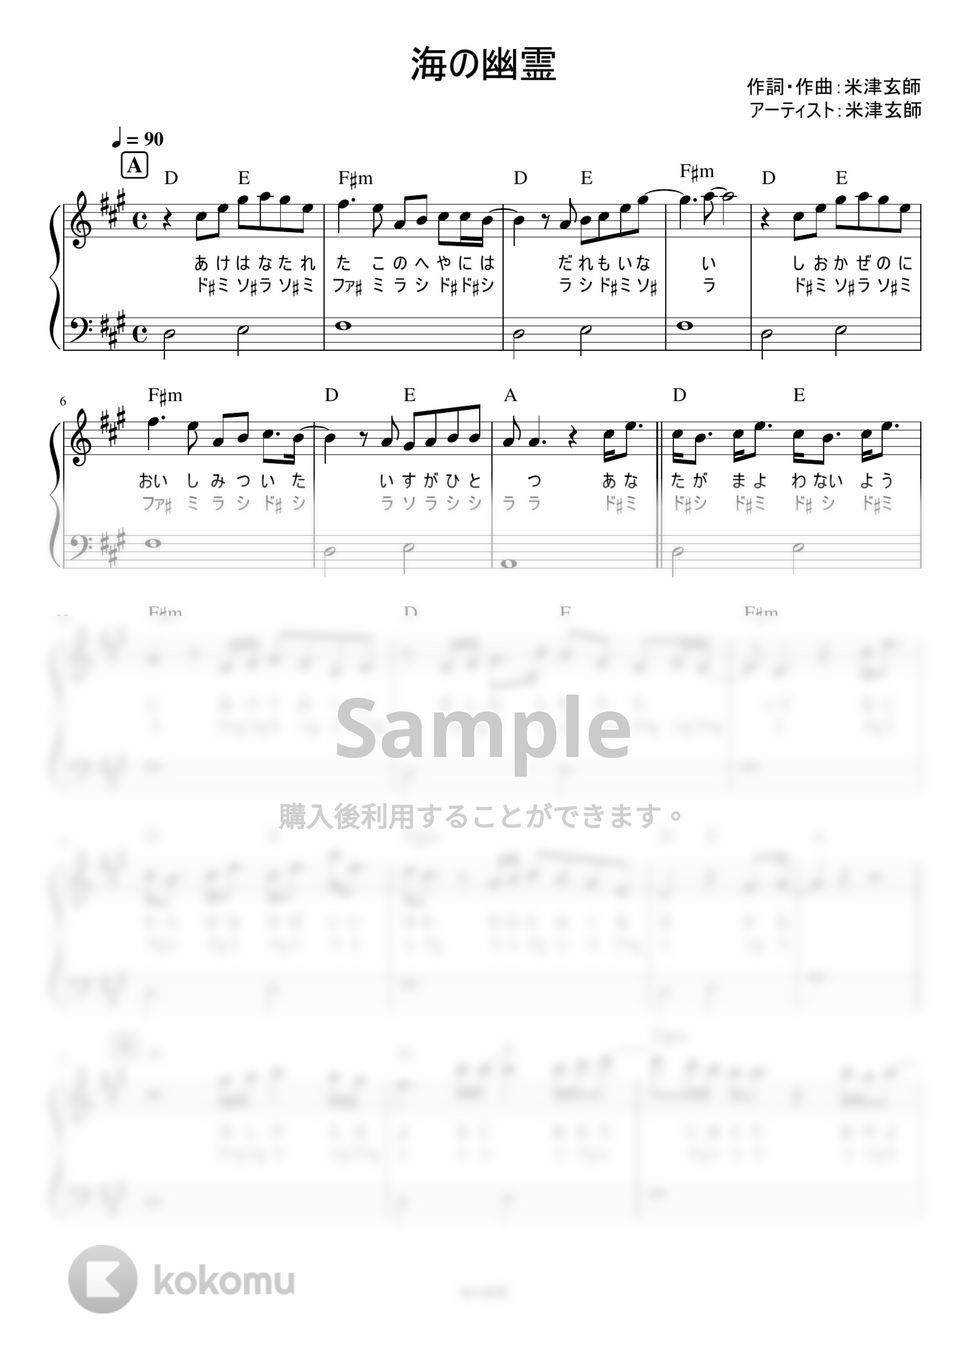 米津玄師 - 海の幽霊 (かんたん / 歌詞付き / ドレミ付き / 初心者) by piano.tokyo